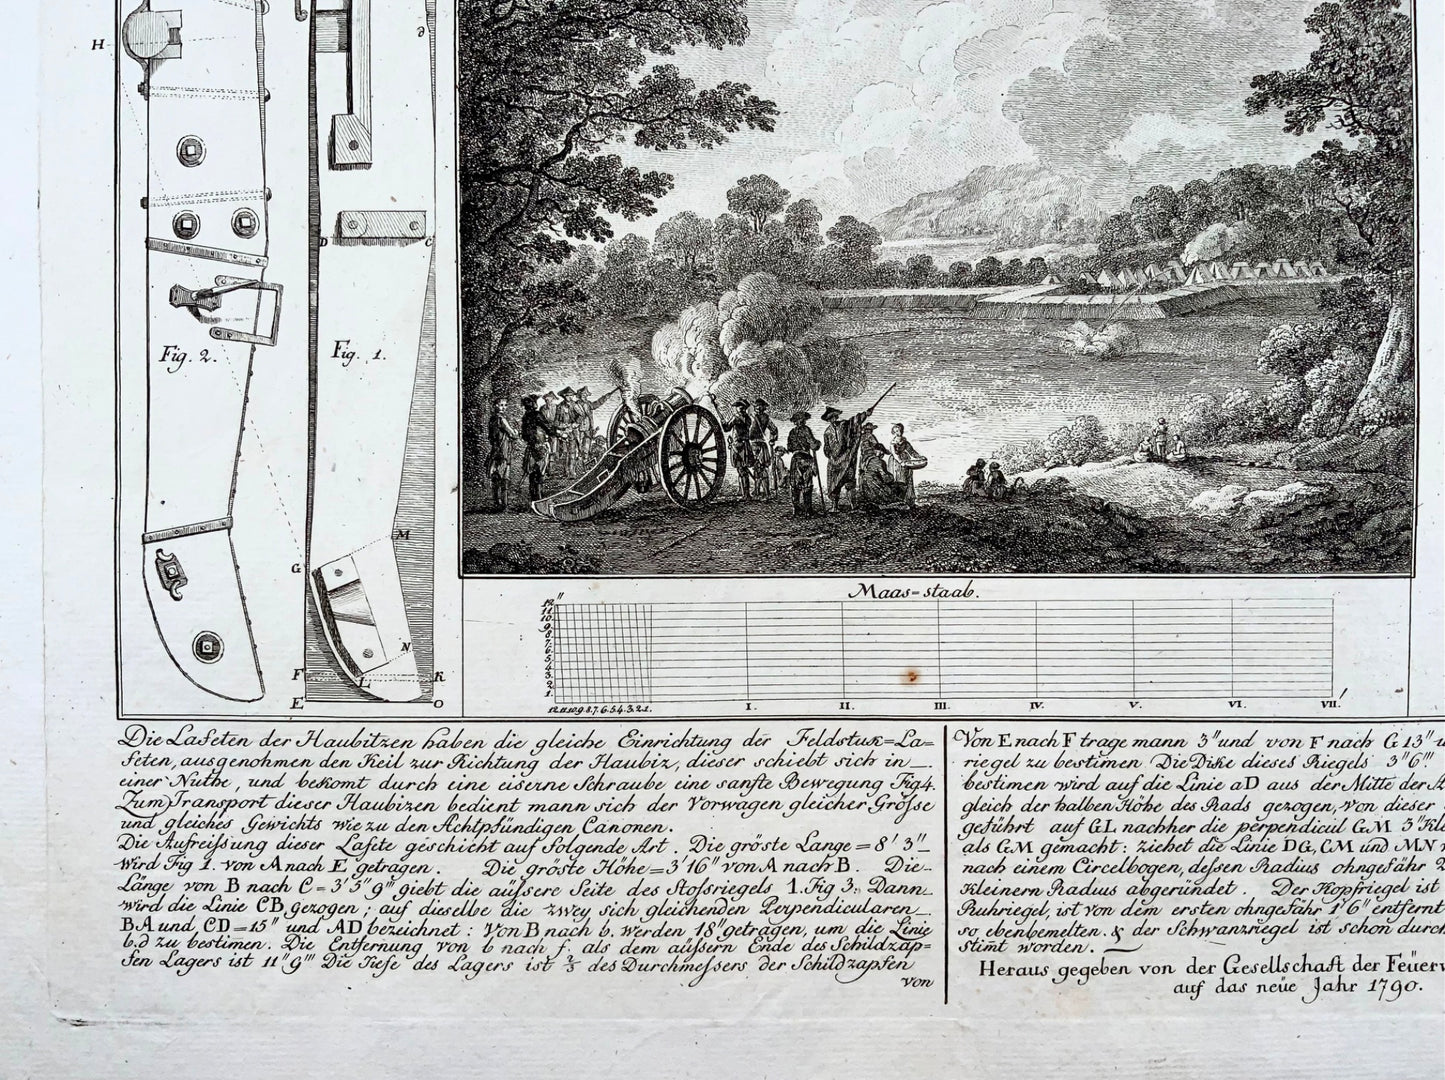 1748 BORDATA MILITARE Schellenberg 'Von der Lafete' Obici da artiglieria da campo